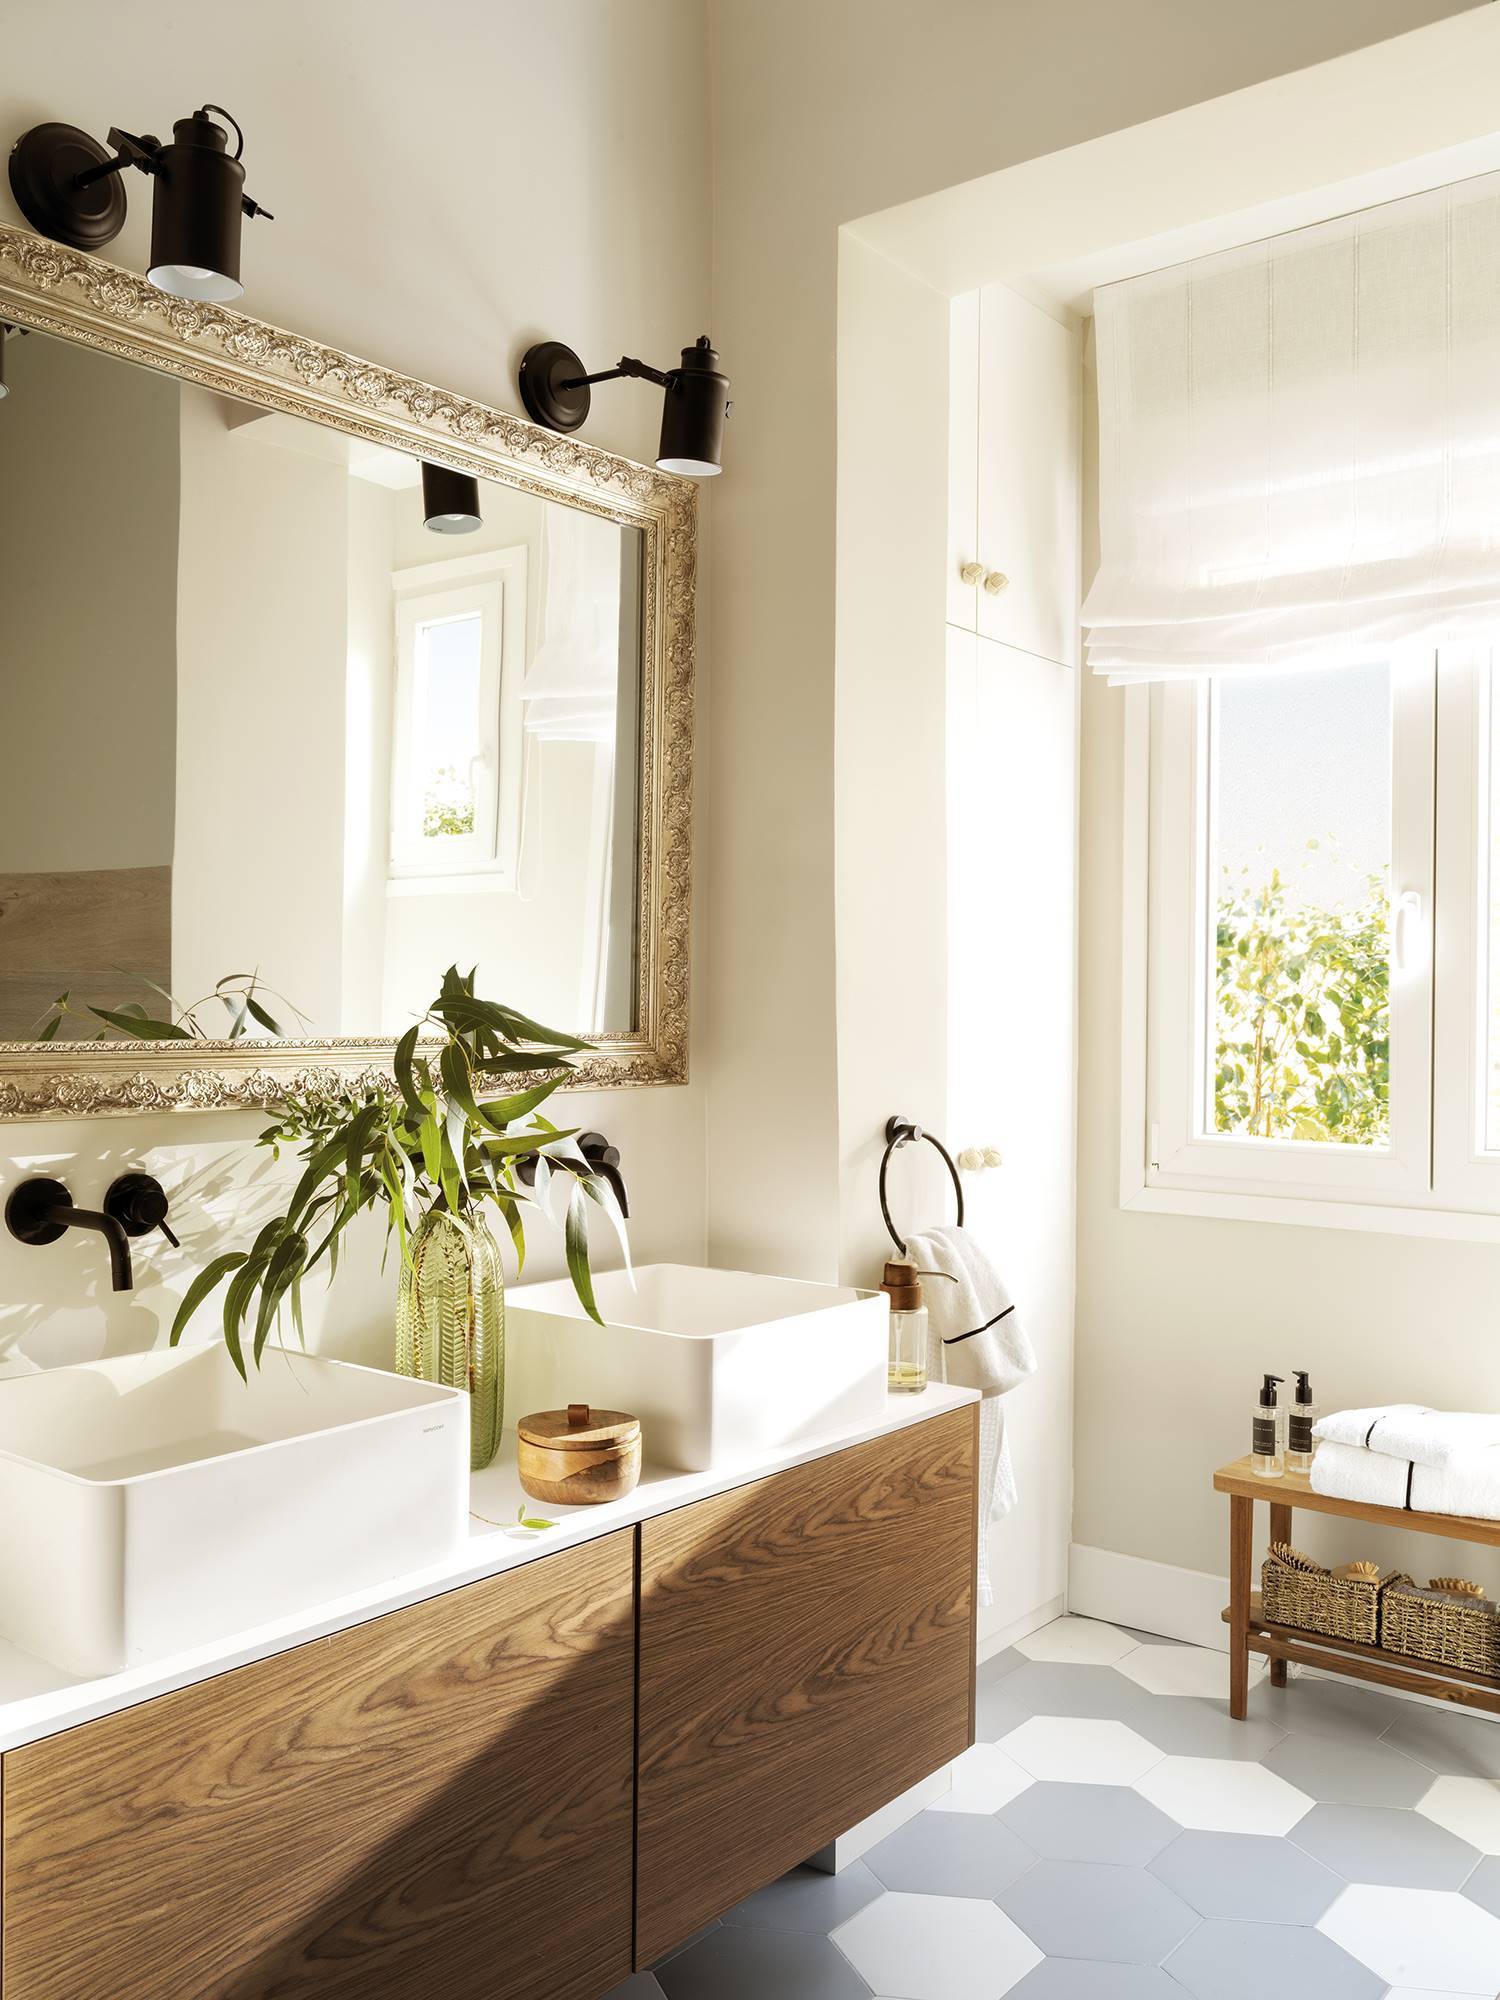 Baño con suelo de baldosas hexagonales, mueble de madera, dos lavabos y un espejo con marco dorado antiguo bajo dos apliques modernos de metal negro